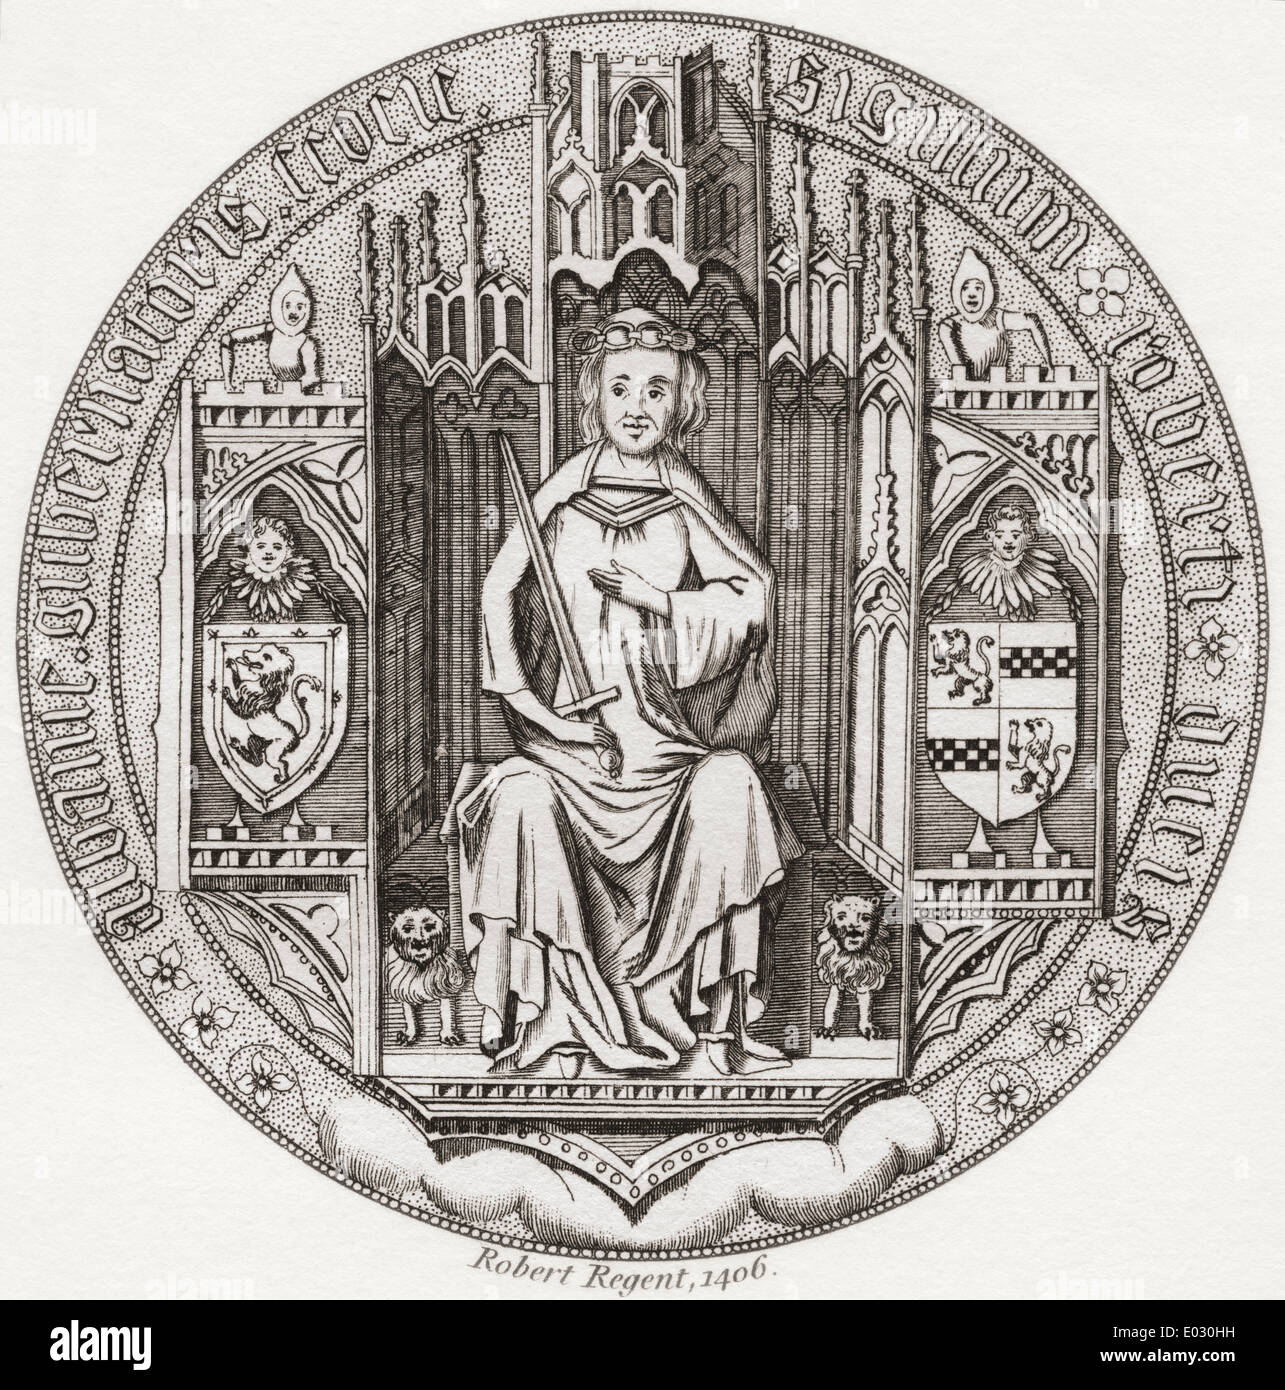 Seal of Robert Stewart, Duke of Albany, c. 1340 – 1420. Stock Photo